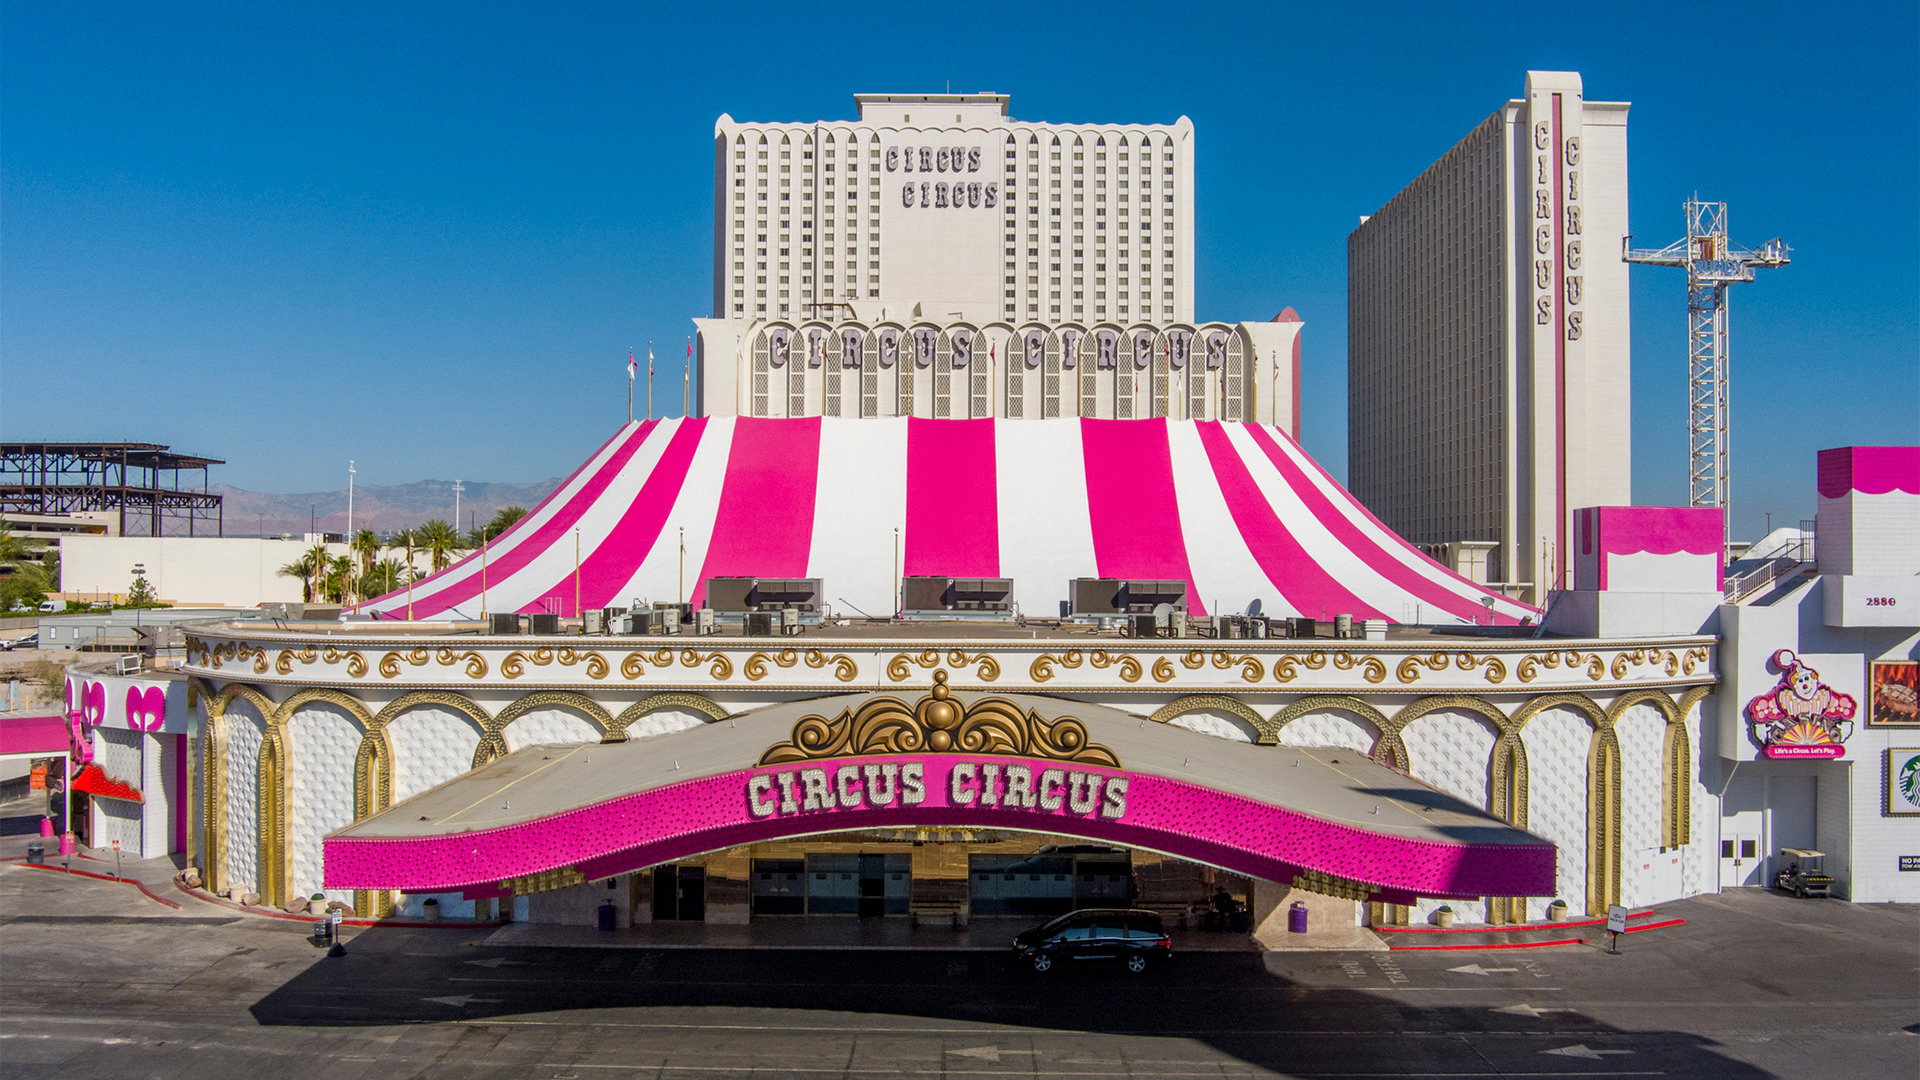 Las Vegas Strip's Circus Circus unveils new exterior design | Yogonet ...